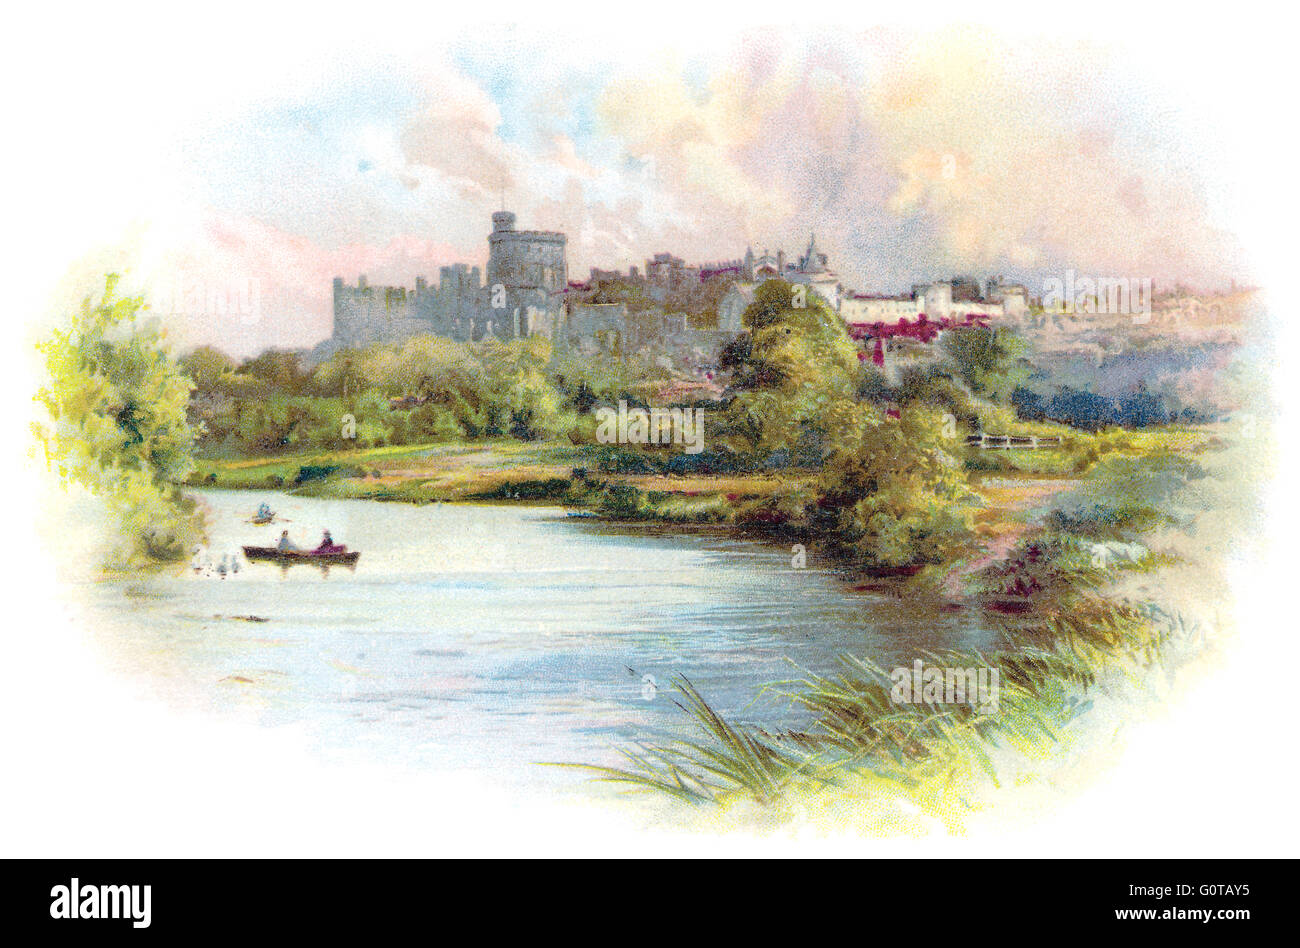 Chromolithographic illustration couleur du château de Windsor et la Tamise, prises à partir d'une carte postale édouardienne. Banque D'Images